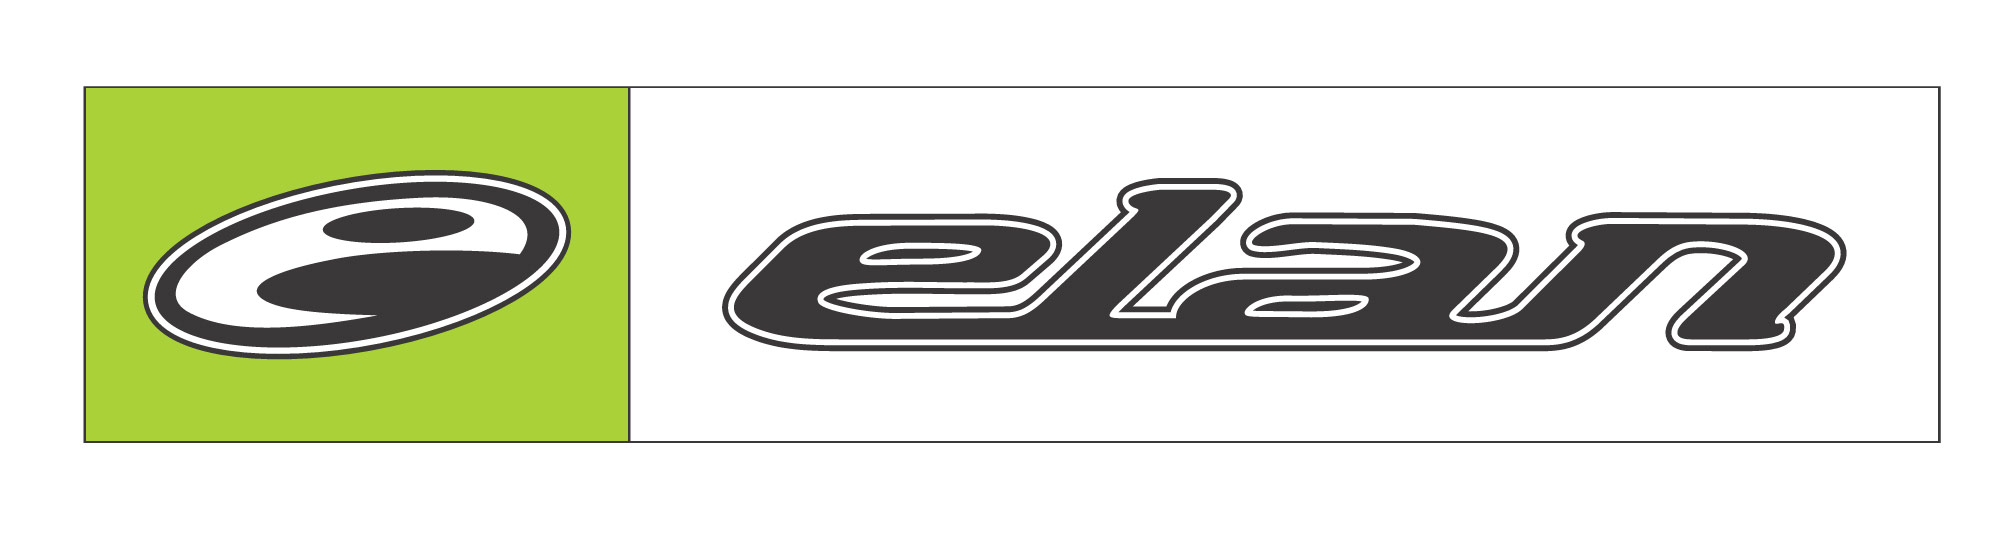 elan logo 